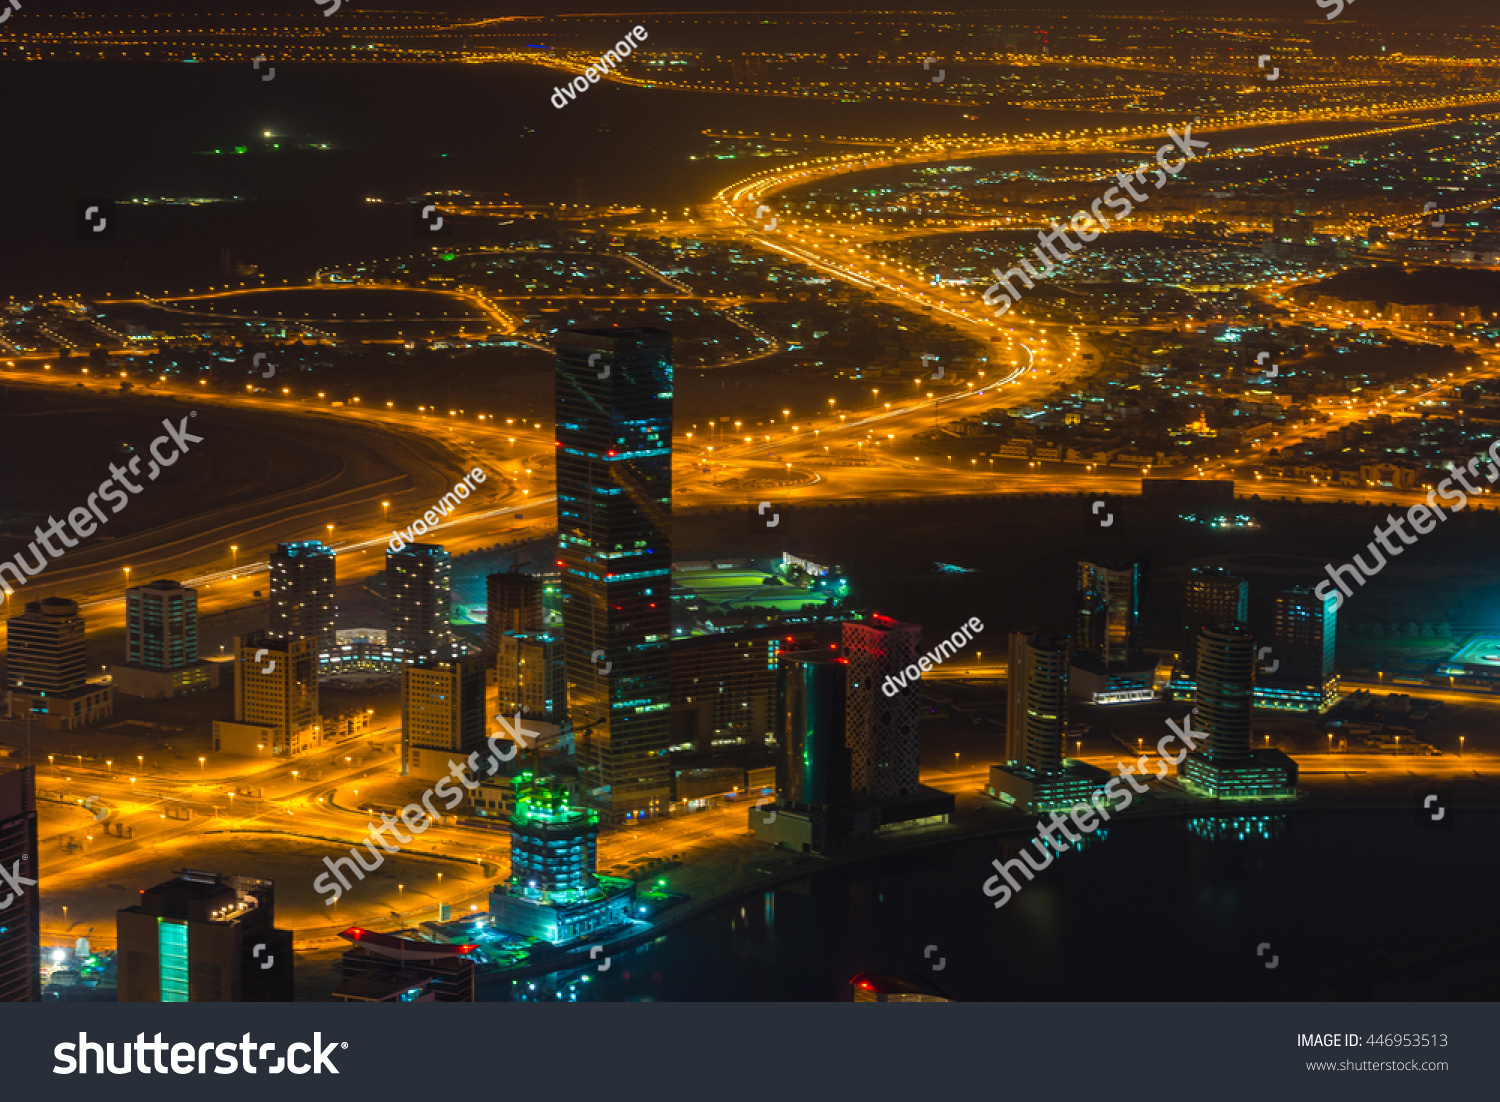 city lights scene